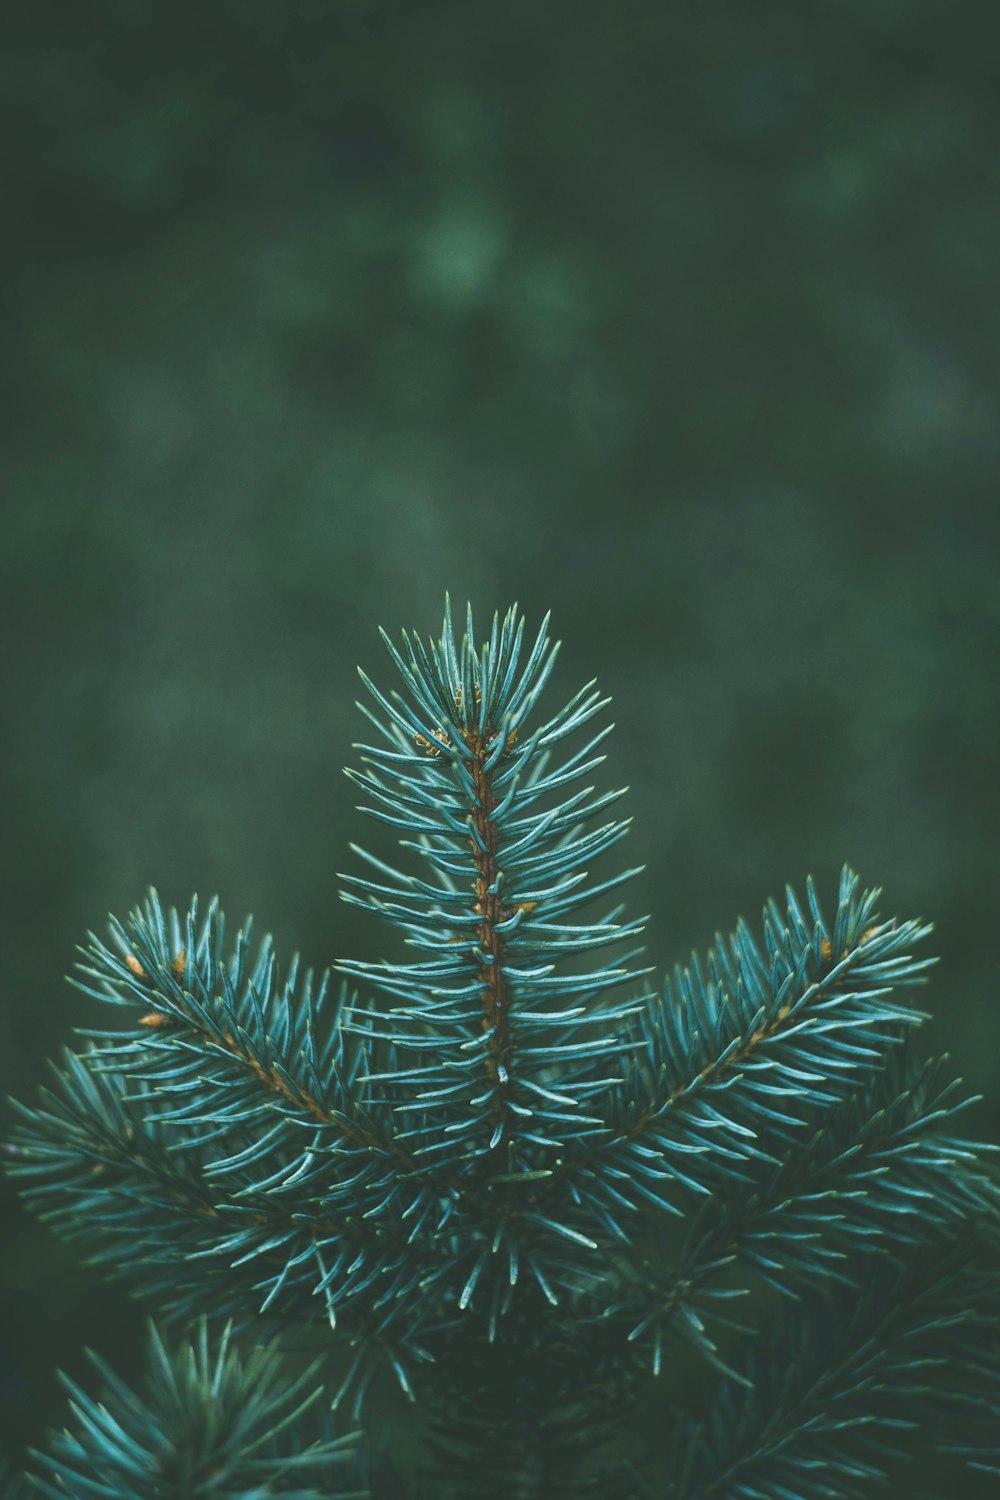 クローズアップ写真の緑の松の木